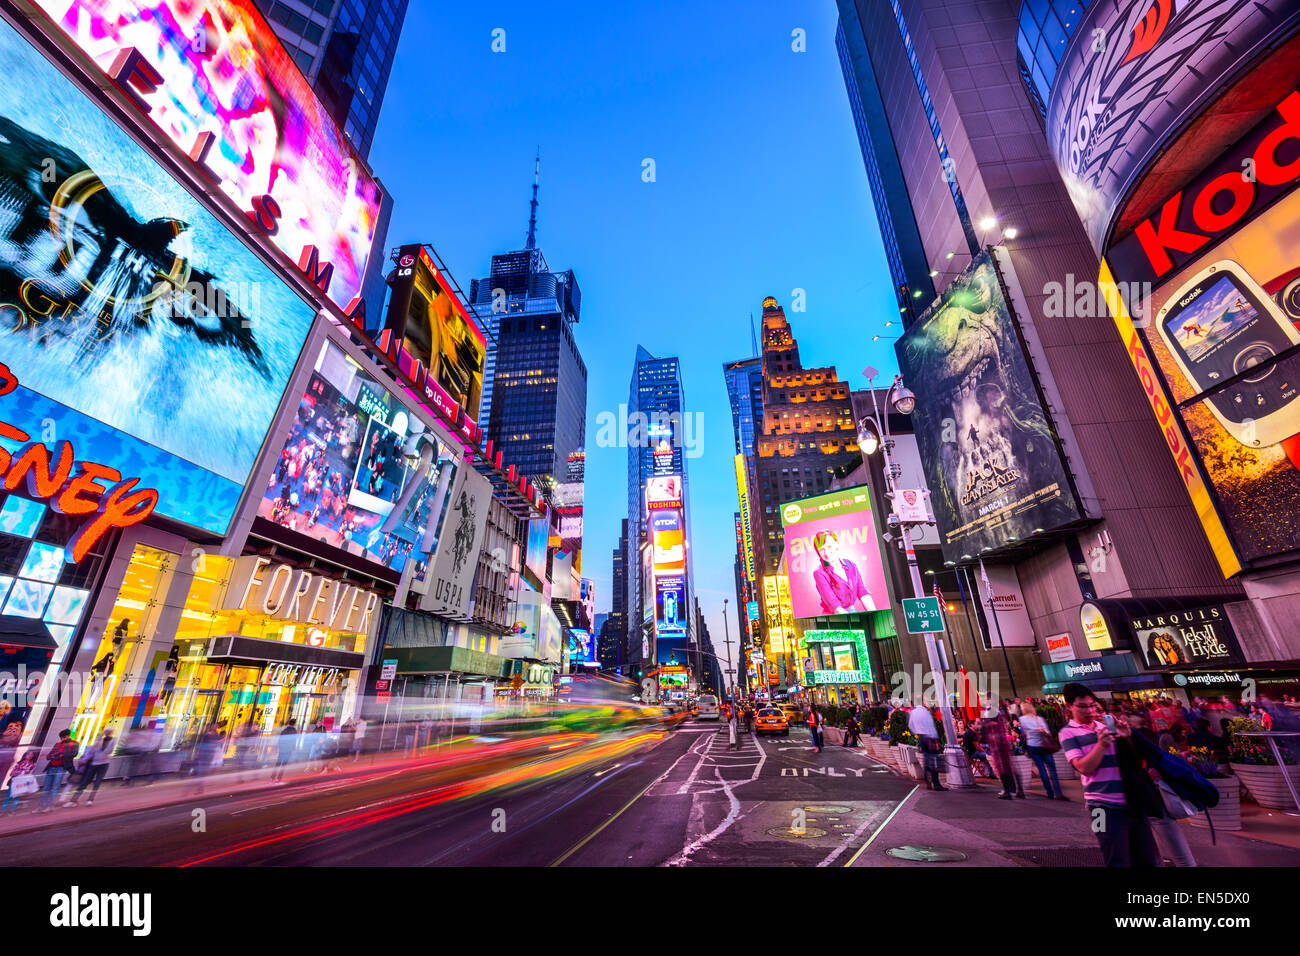 La ville de New York, USA sur Times Square, foules et trafic de nuit. Banque D'Images